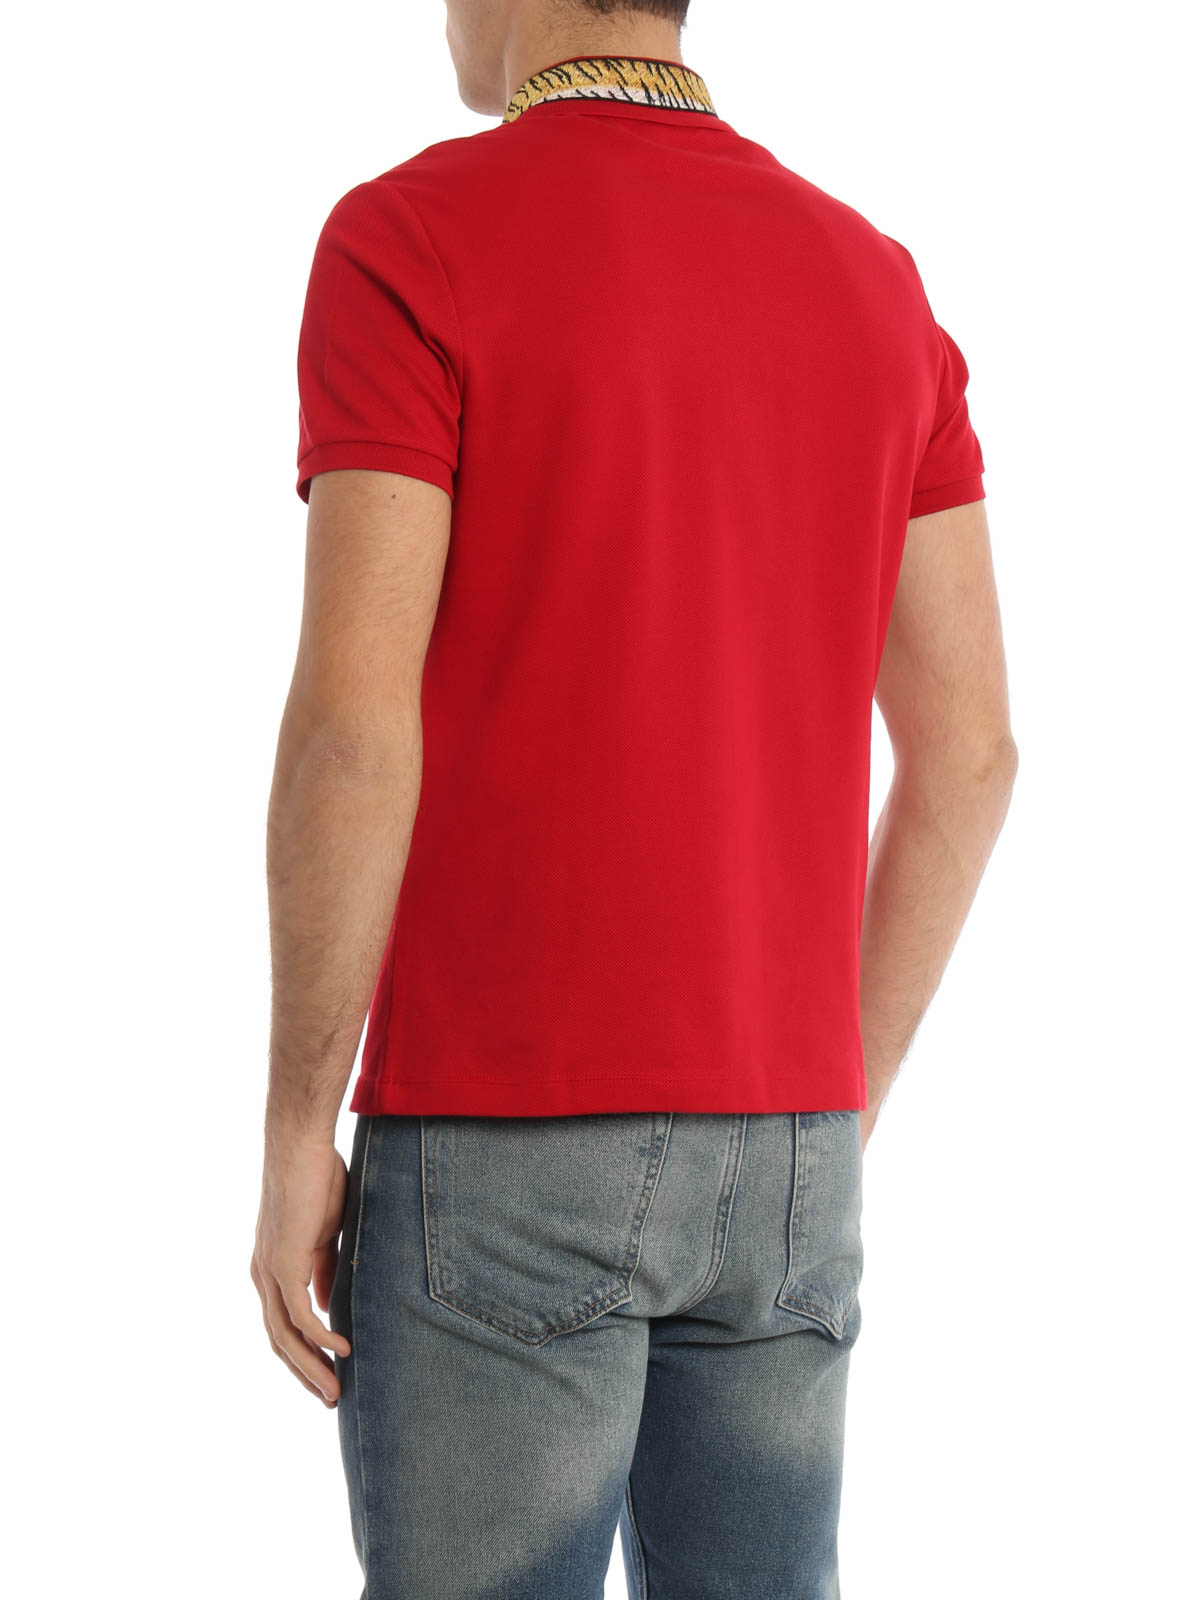 ポロシャツ Gucci - ポロシャツ メンズ - 赤 - 453865X5H826519